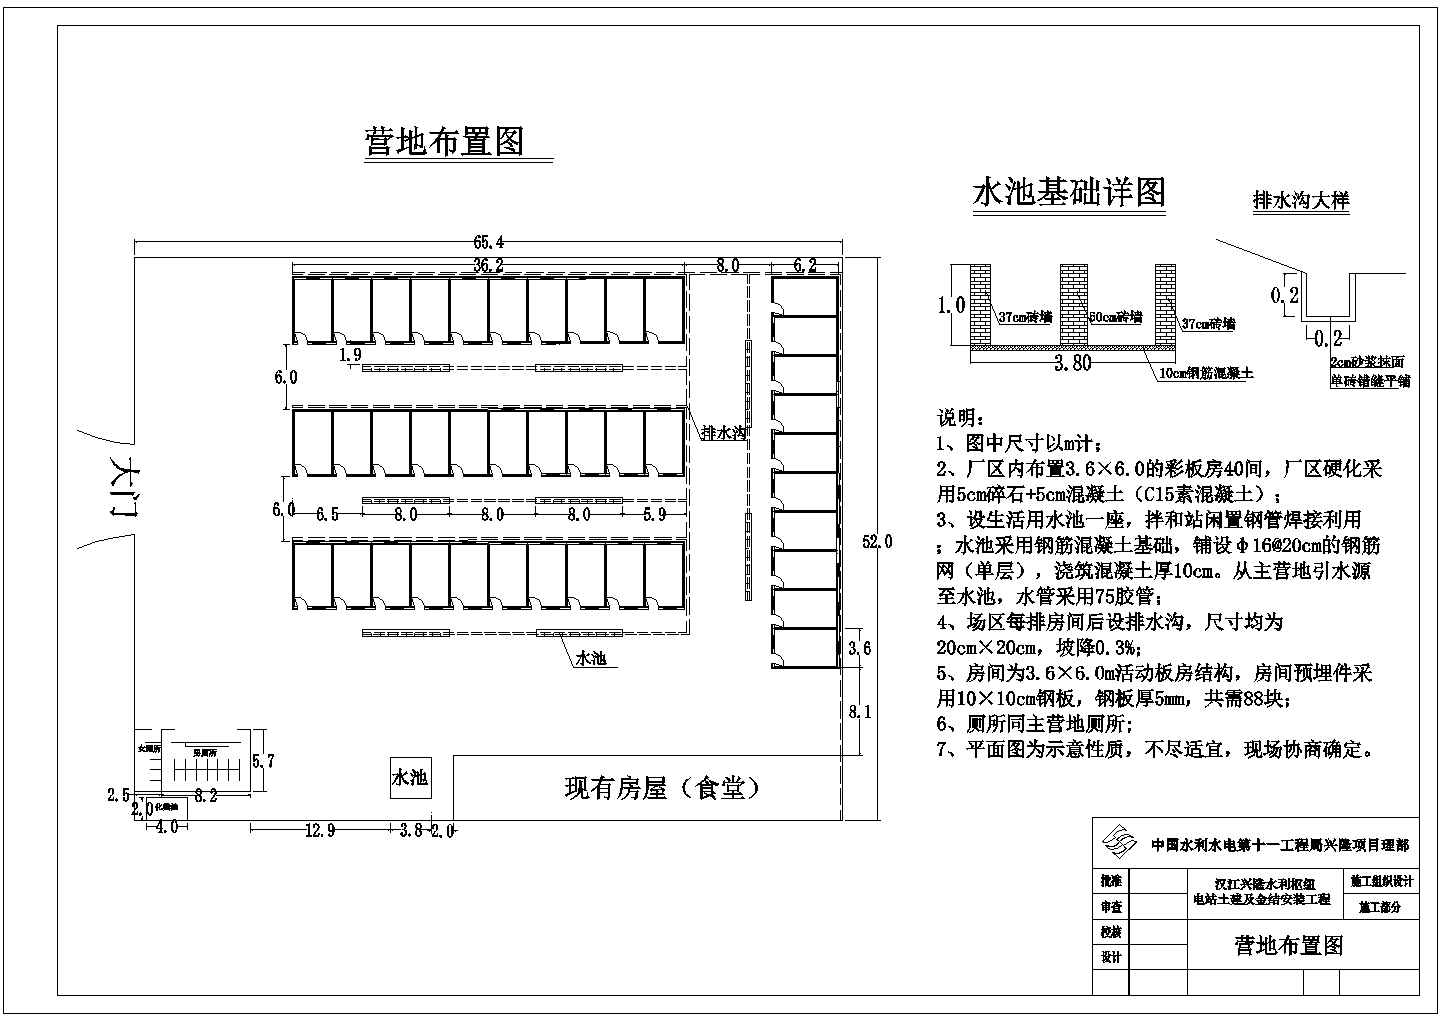 汉江兴隆水利枢纽工程营地规划布置图